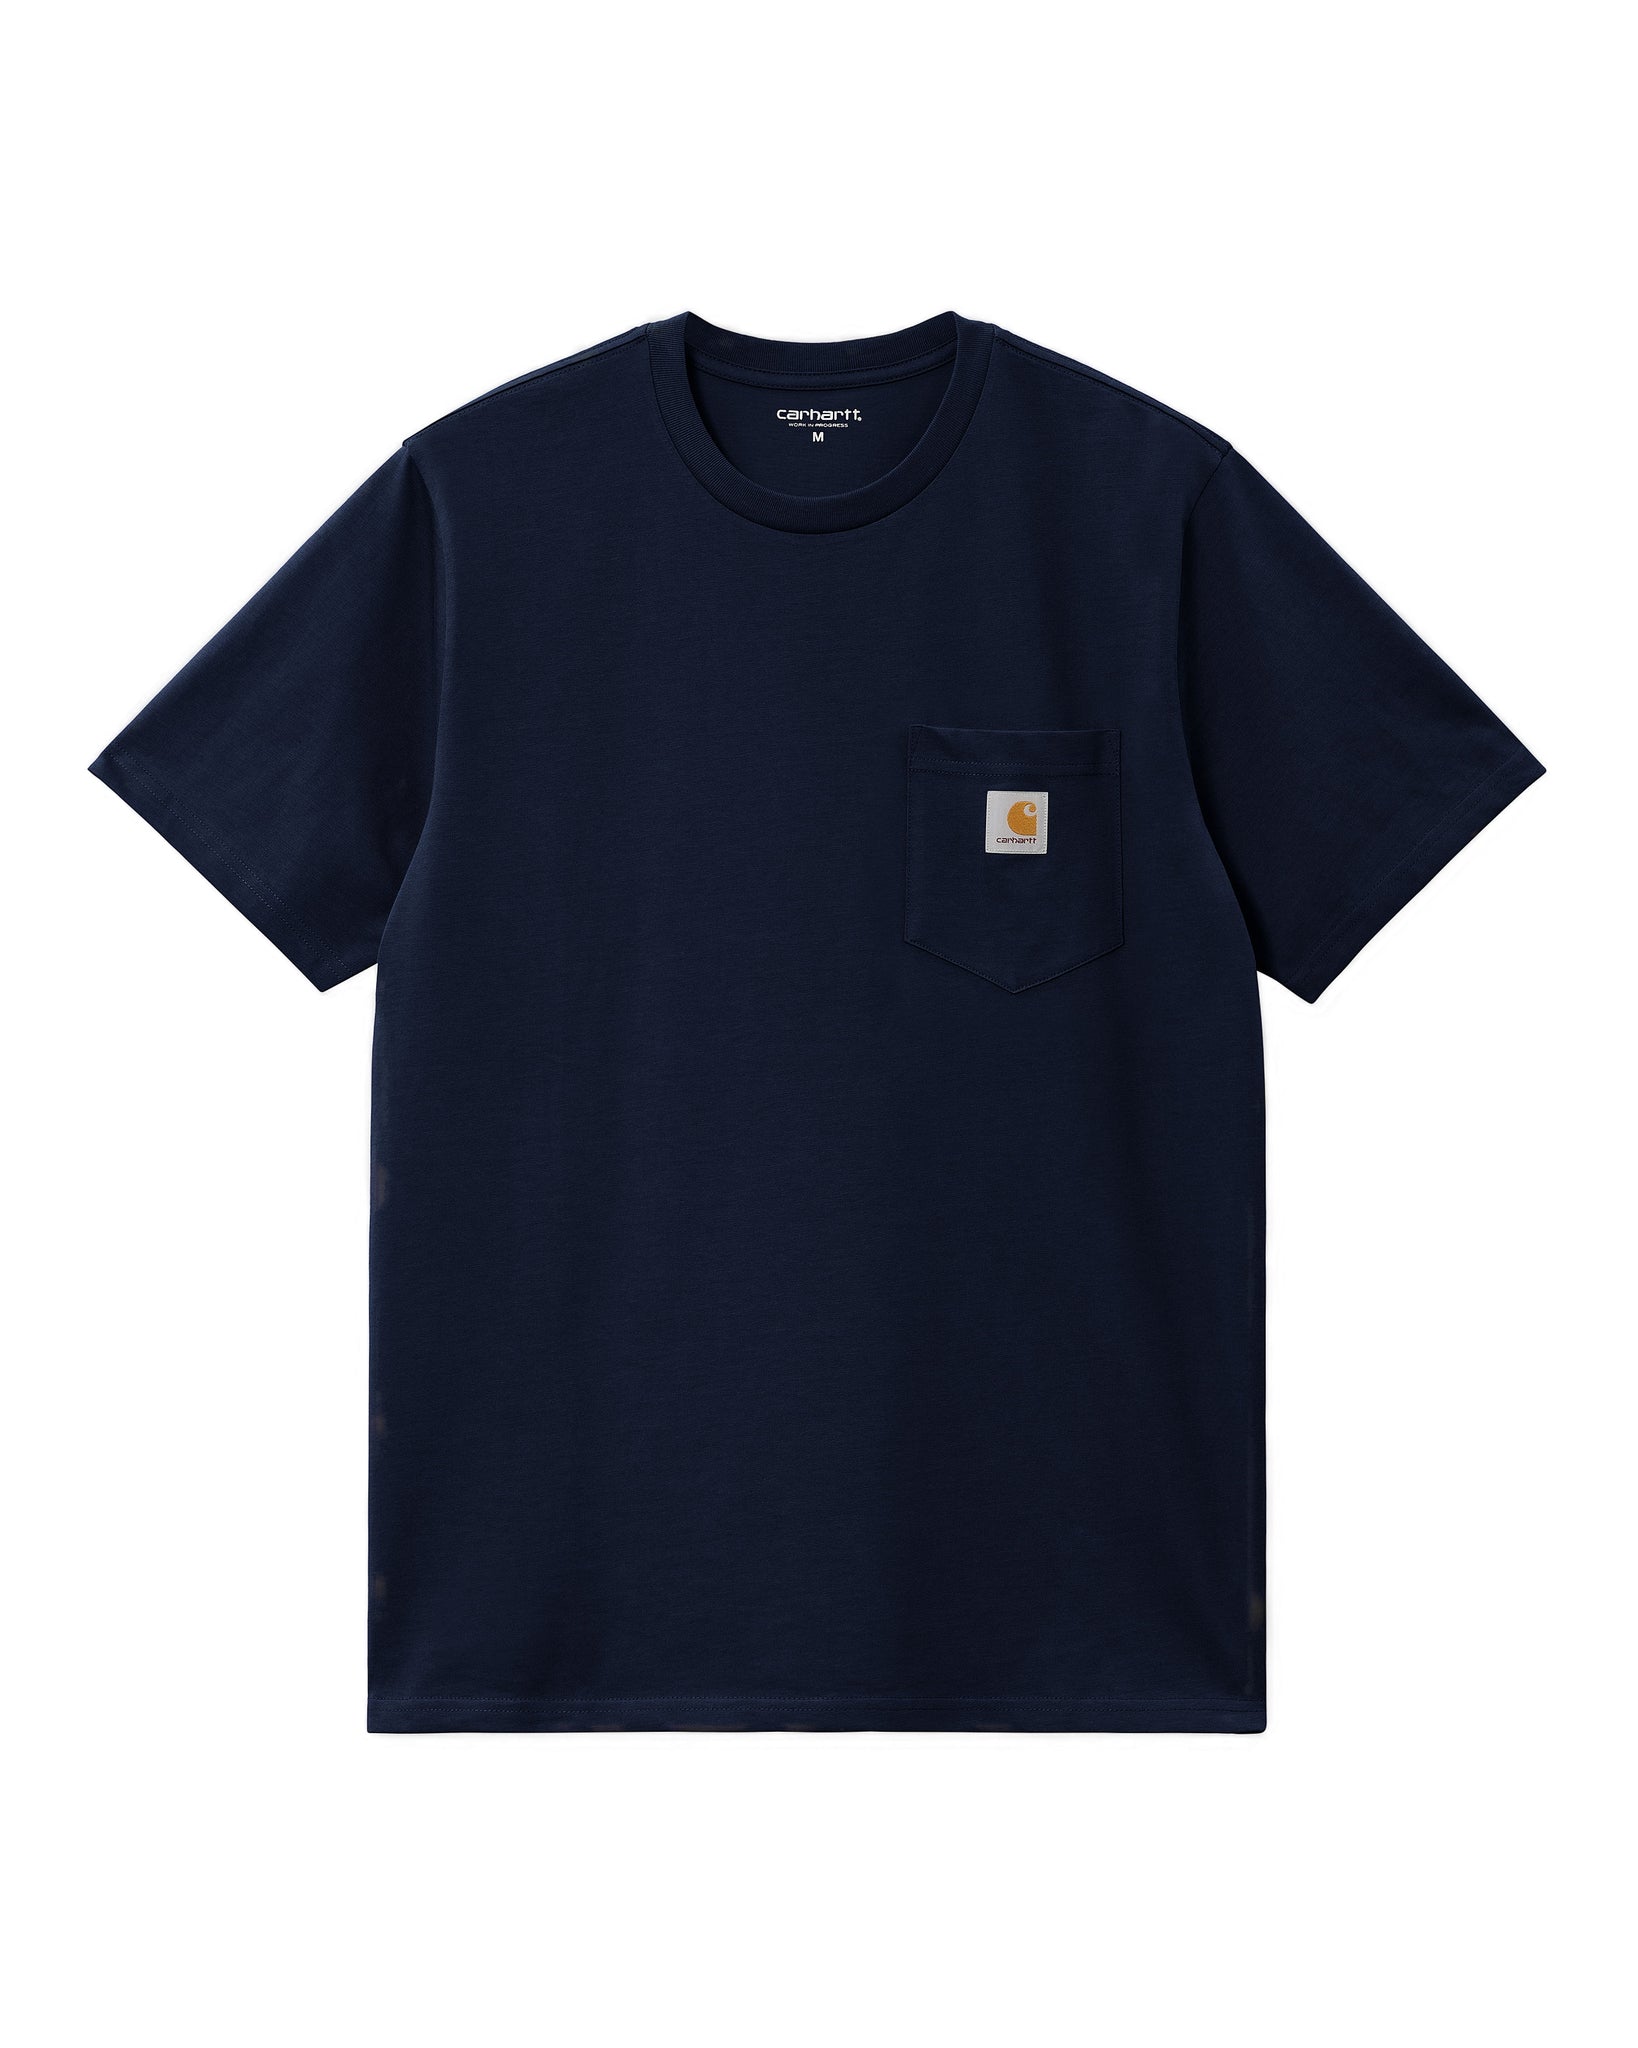 SS Pocket T-Shirt - Dark Navy